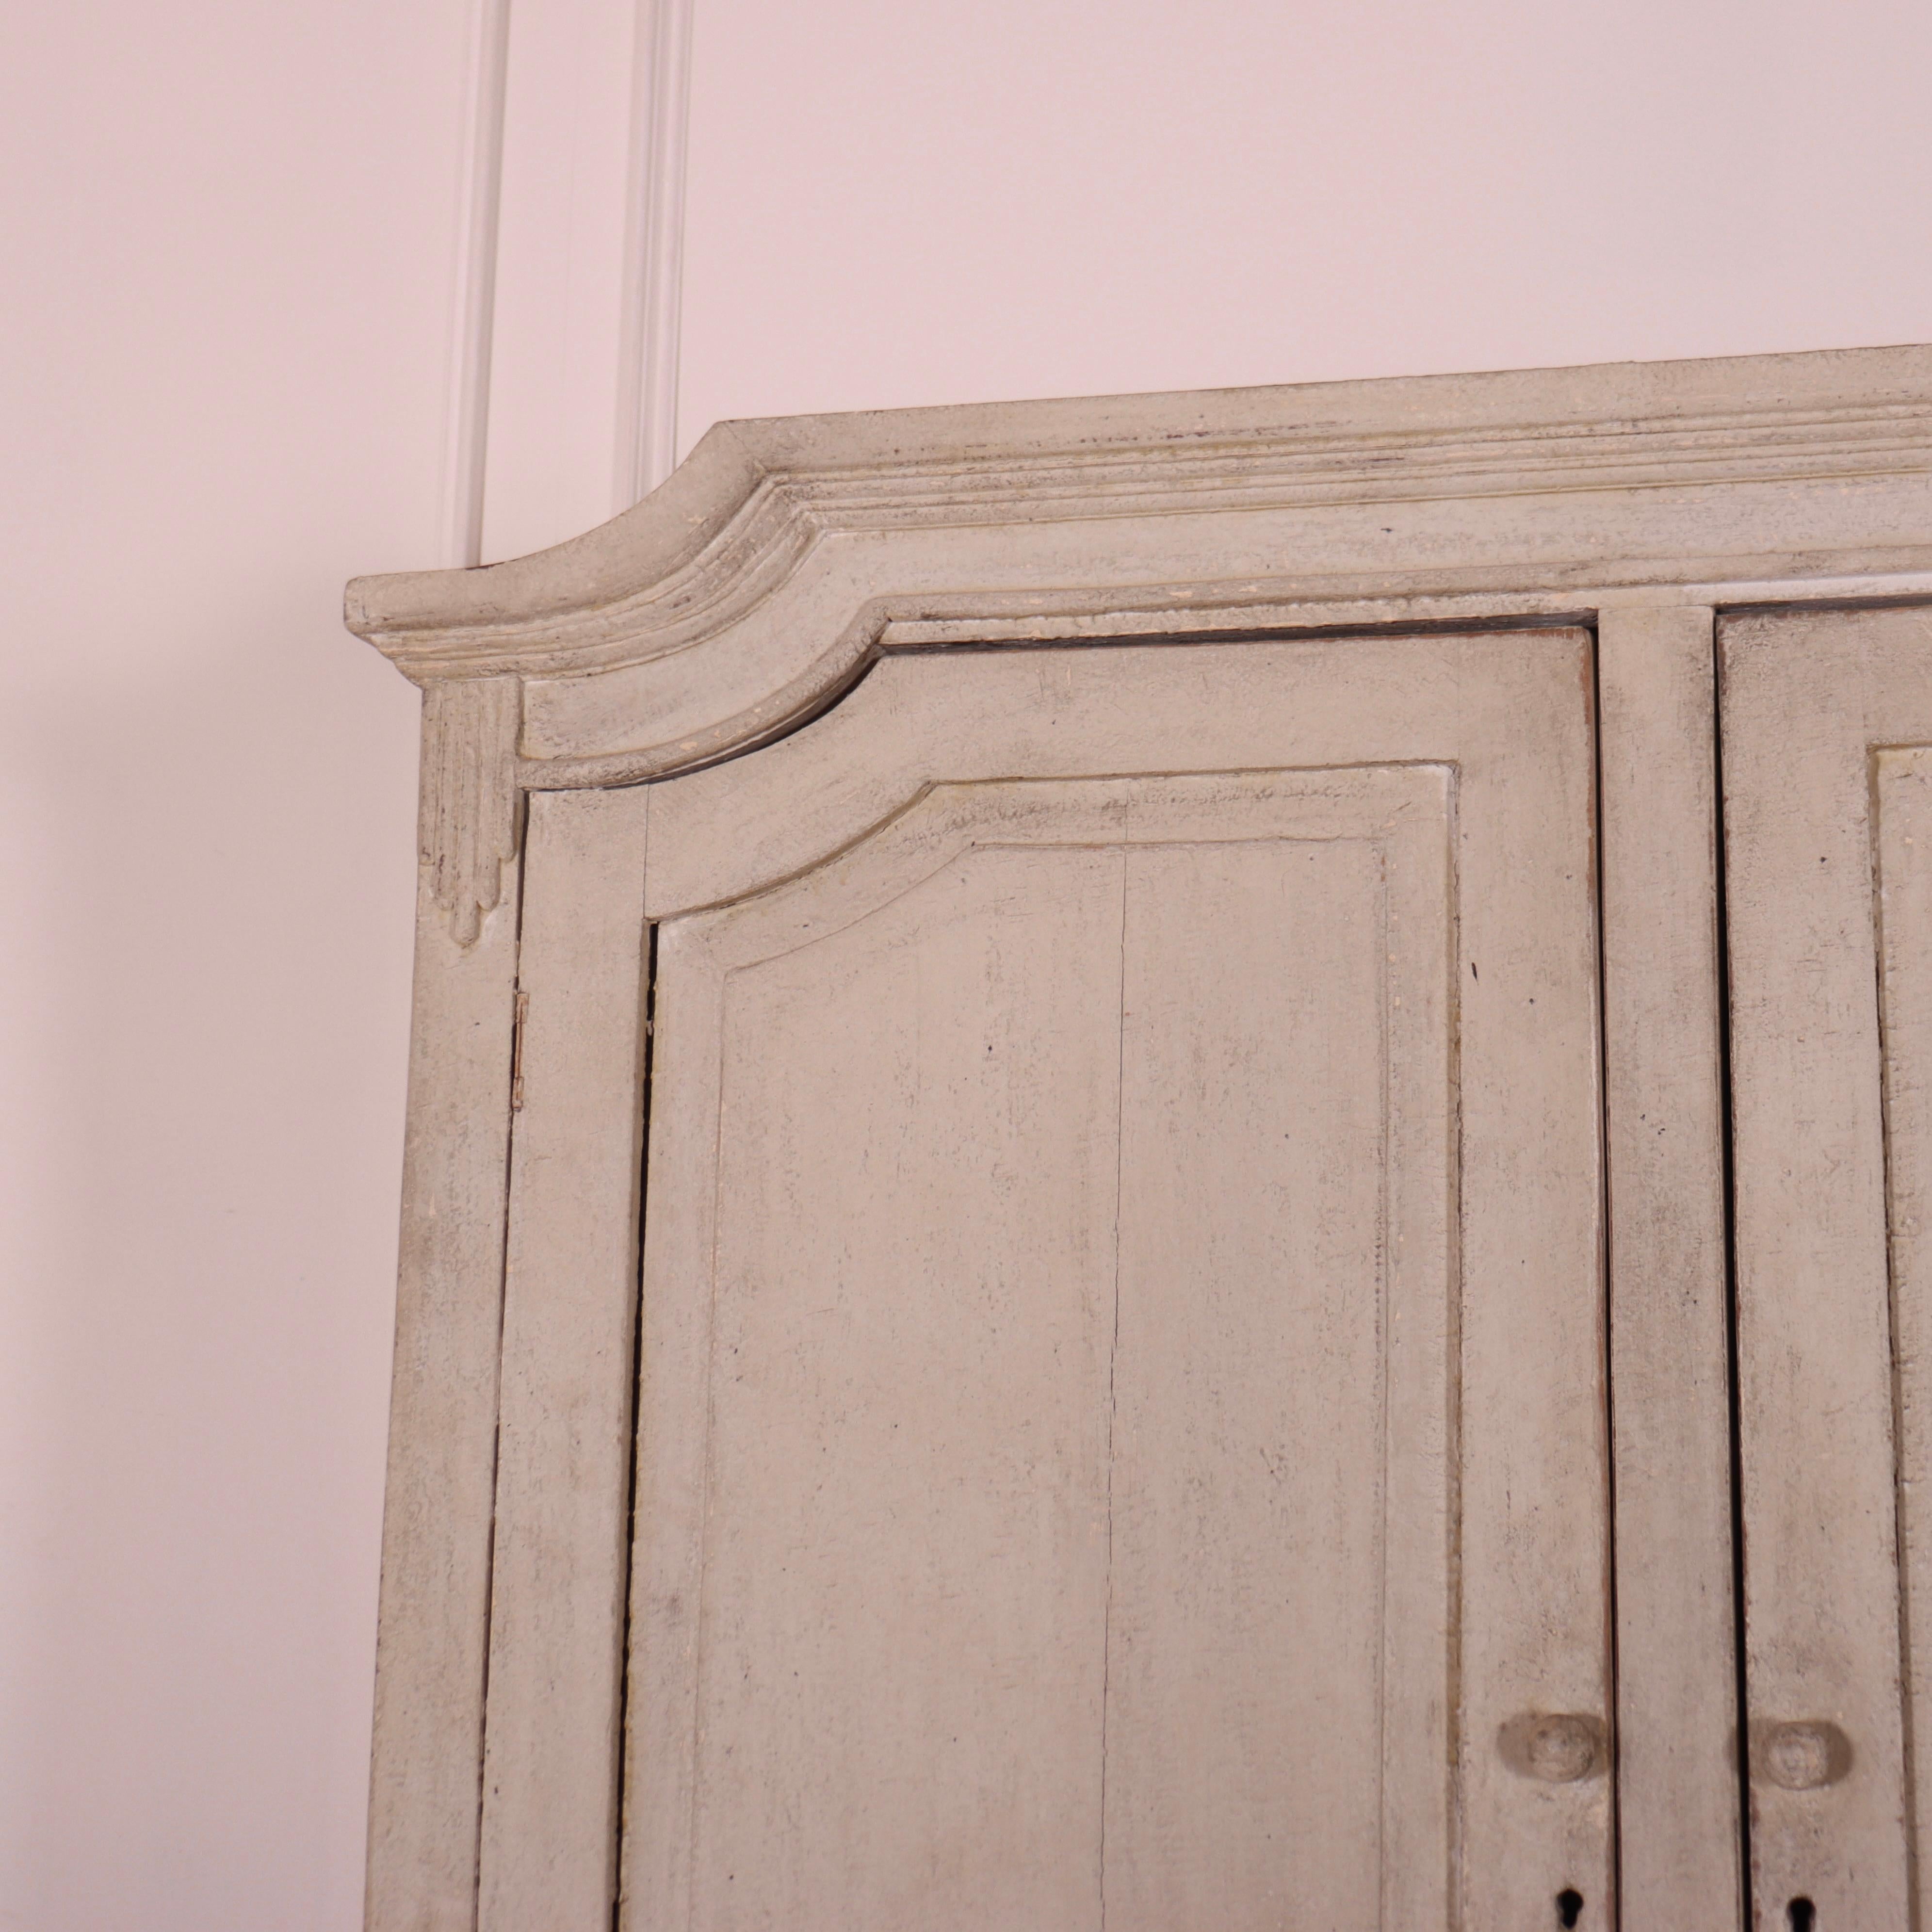 Inhabituelle armoire de ménage suédoise en pin peint de la fin du 19ème siècle. 1890.

Référence : 7812

Dimensions
66 pouces (168 cm) de large
17,5 pouces (44 cm) de profondeur
83 pouces (211 cm) de haut